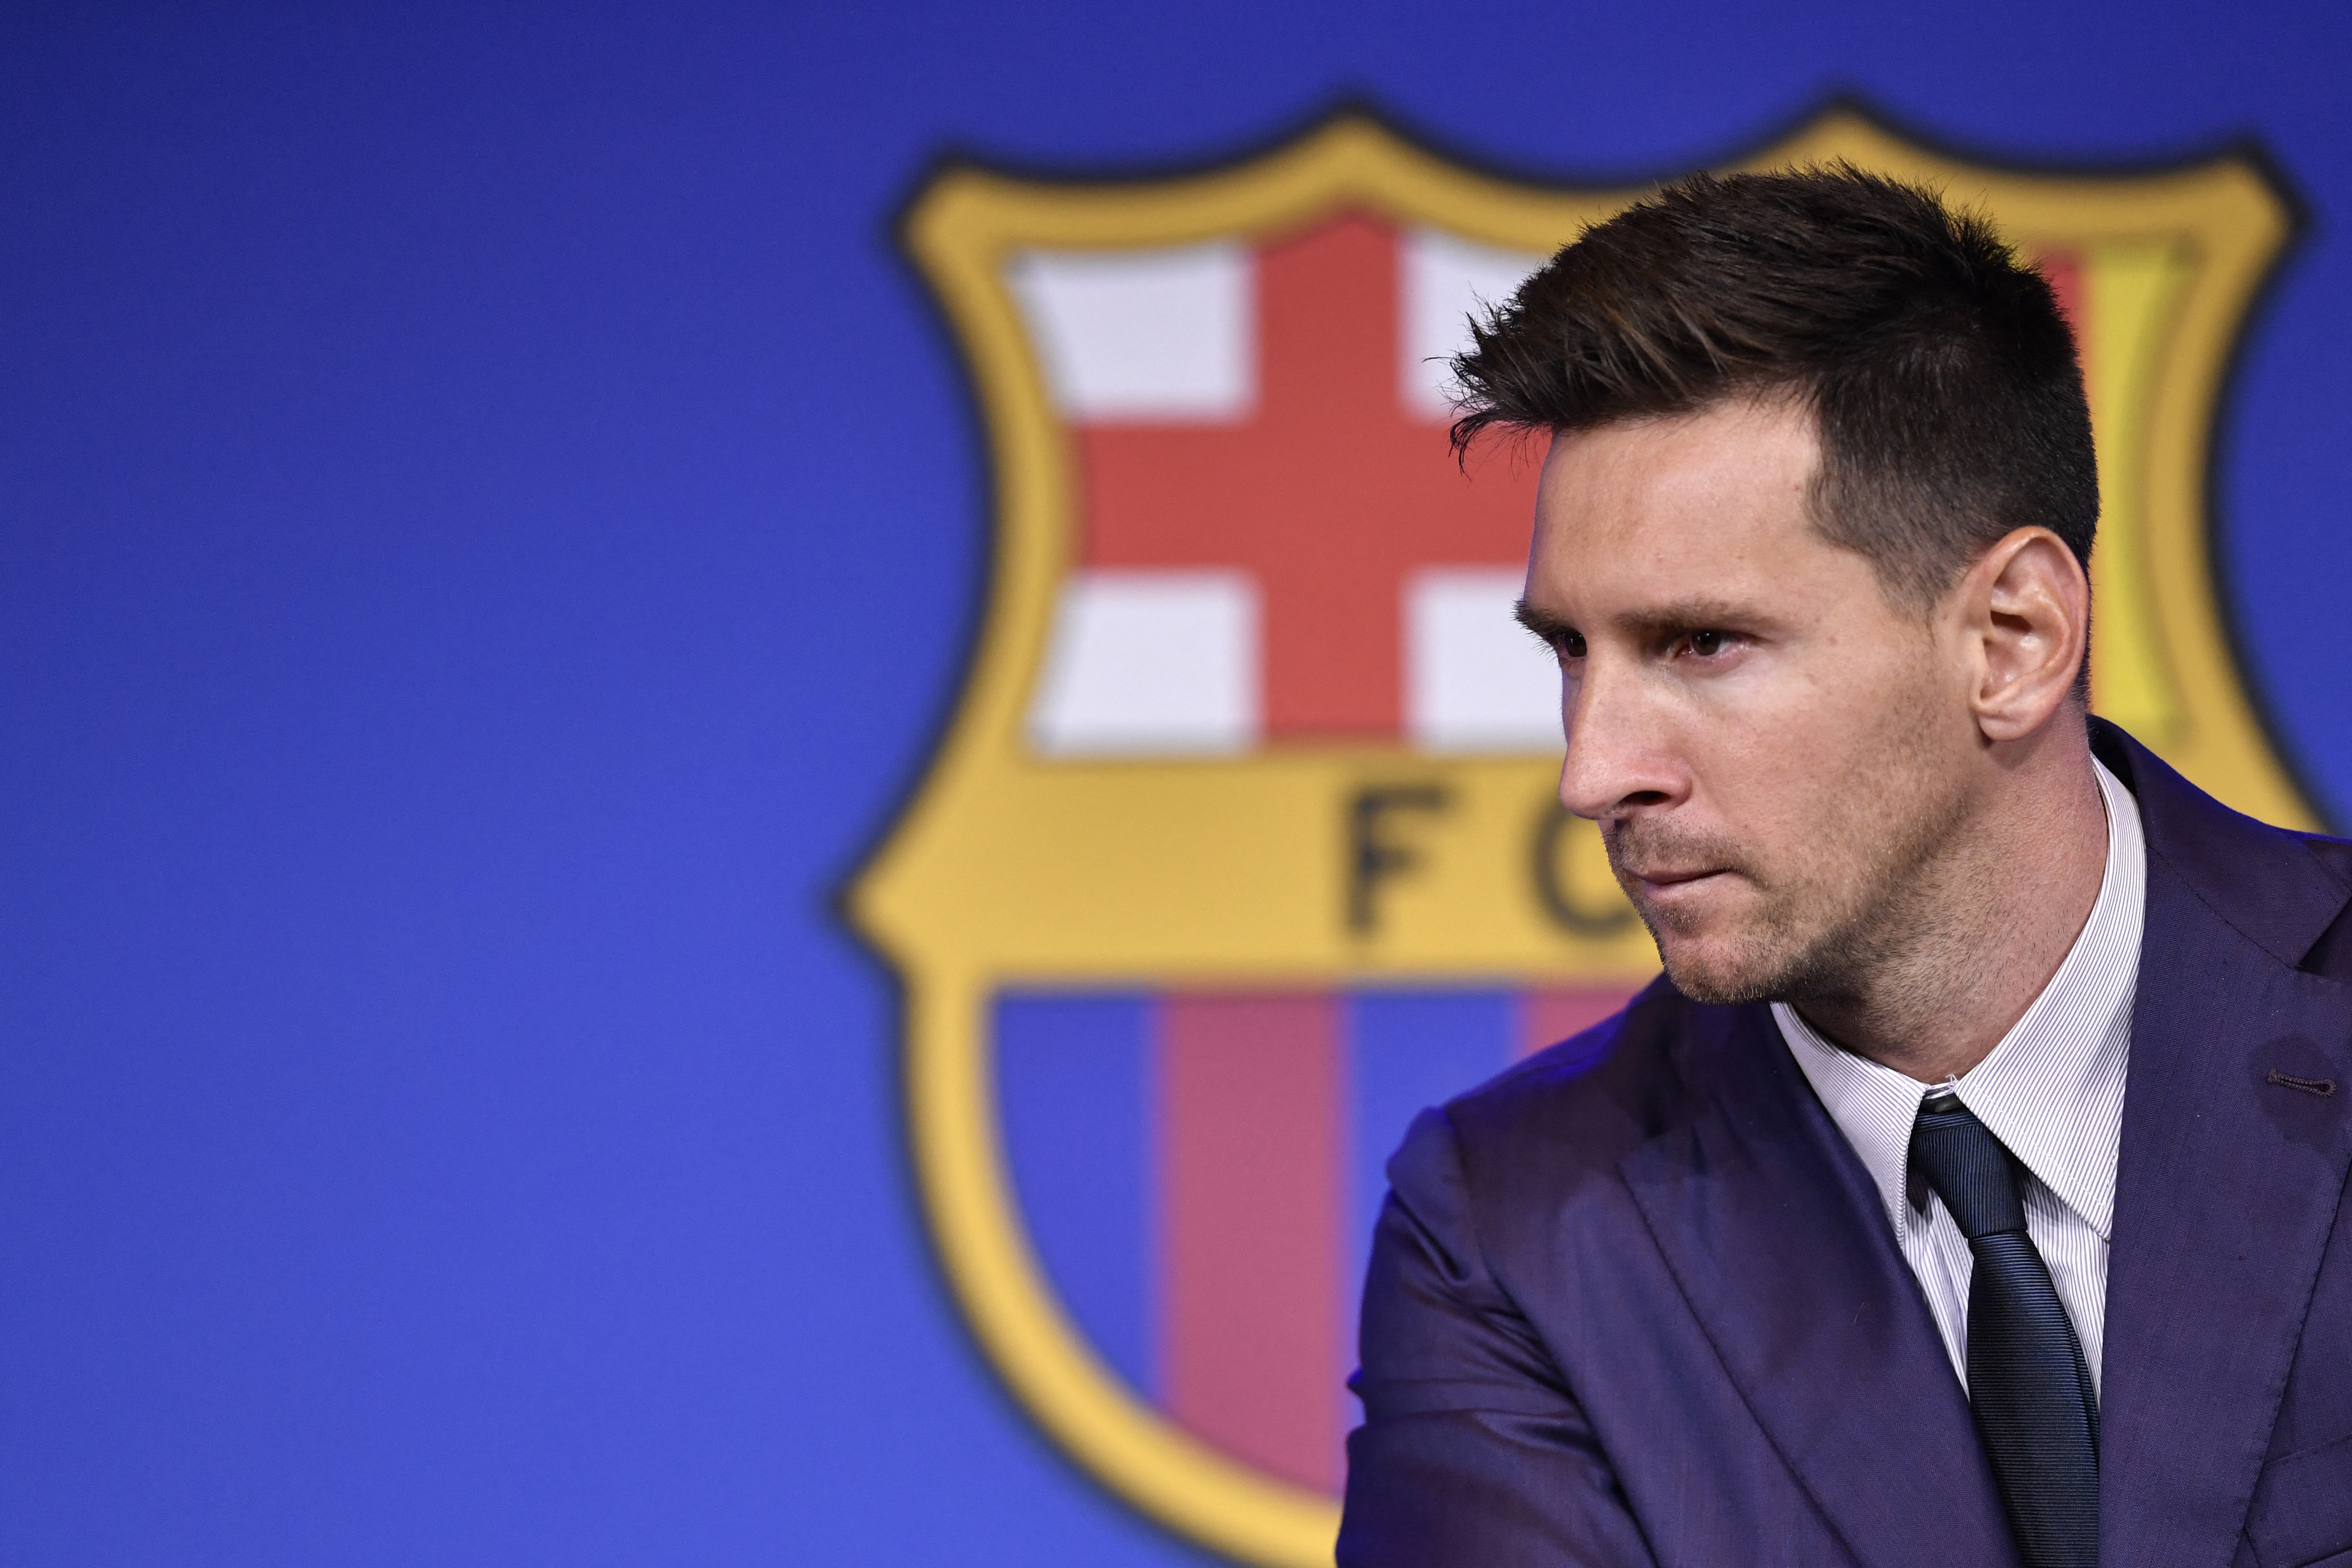 Lionel Messi se despidió del FC Barcelona el domingo 8 de agosto. Esto le costará algunas pérdidas al club blaugrana, según expertos. Foto Prensa Libre: AFP.